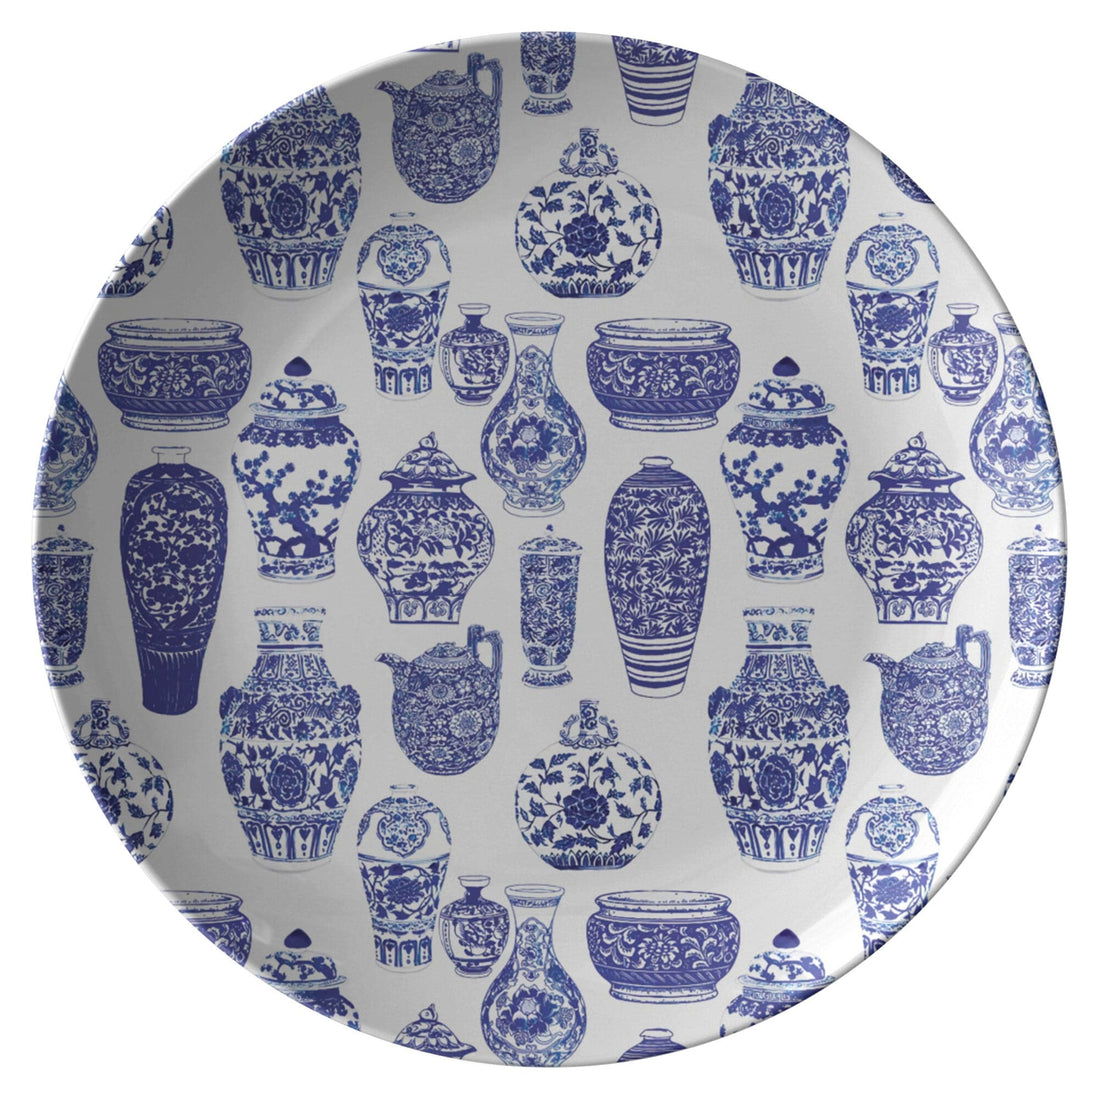 Kate McEnroe New York Chinoiserie Vases Dinner PlatePlates9820SINGLE